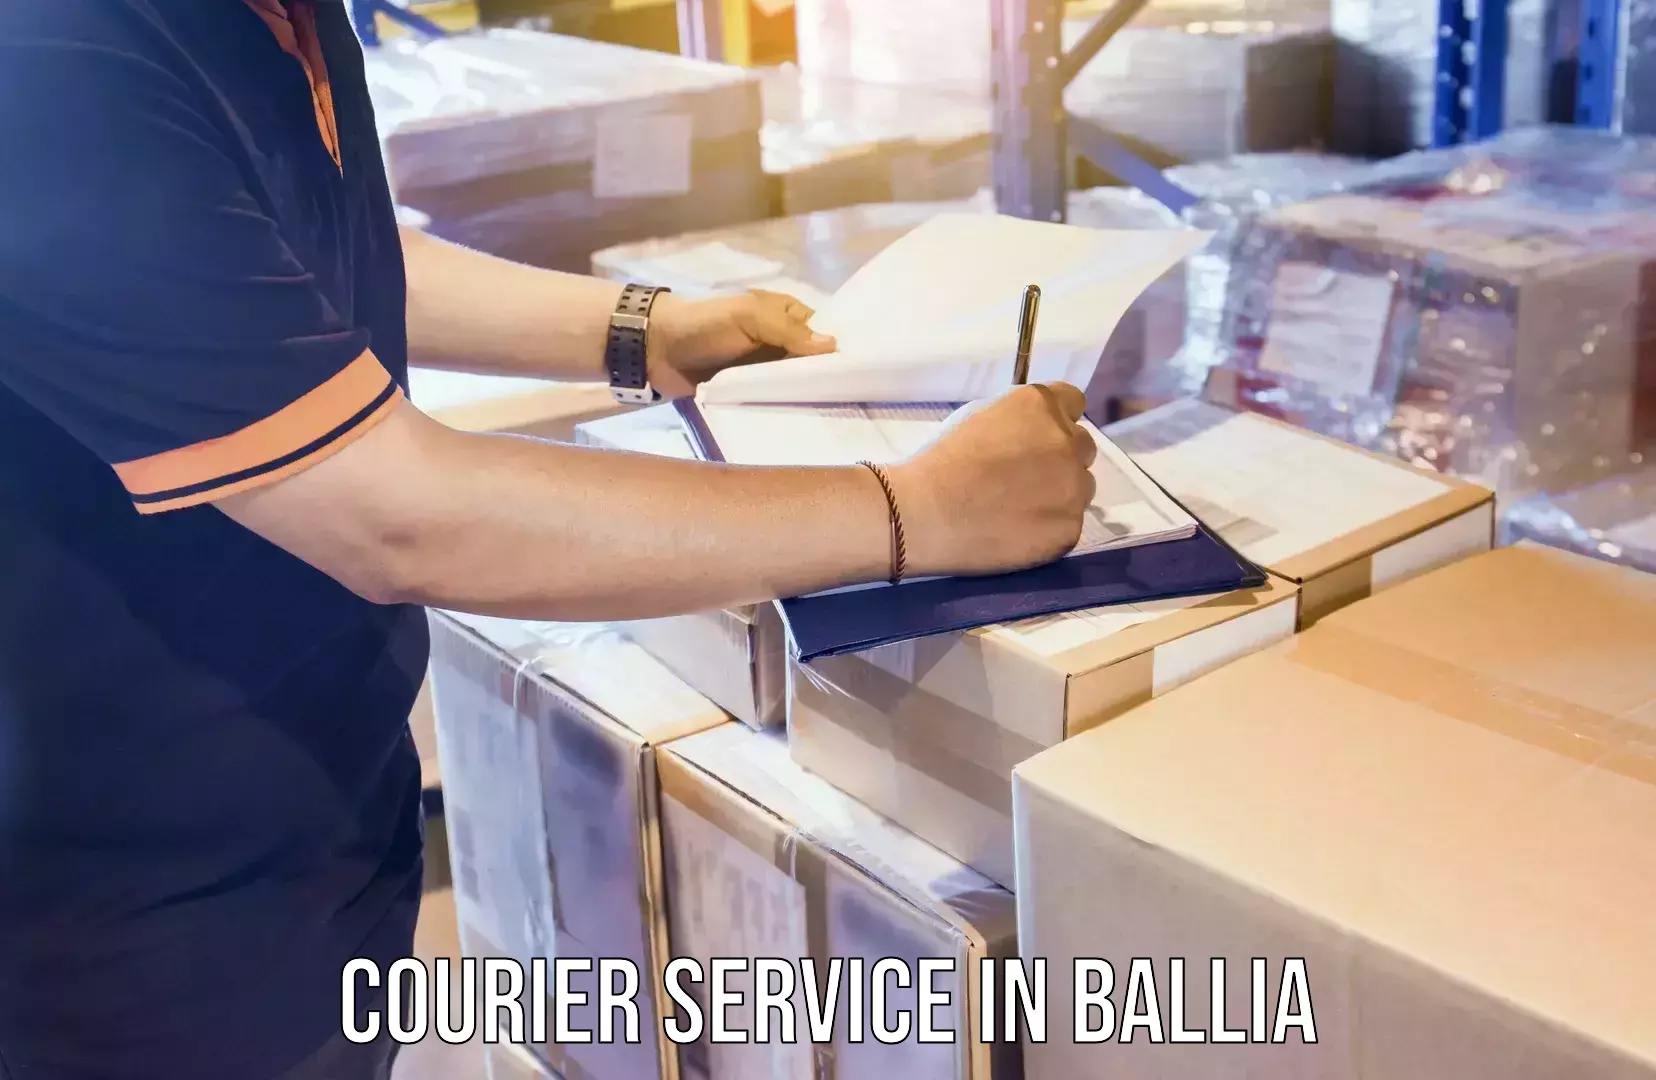 Fast delivery service in Ballia